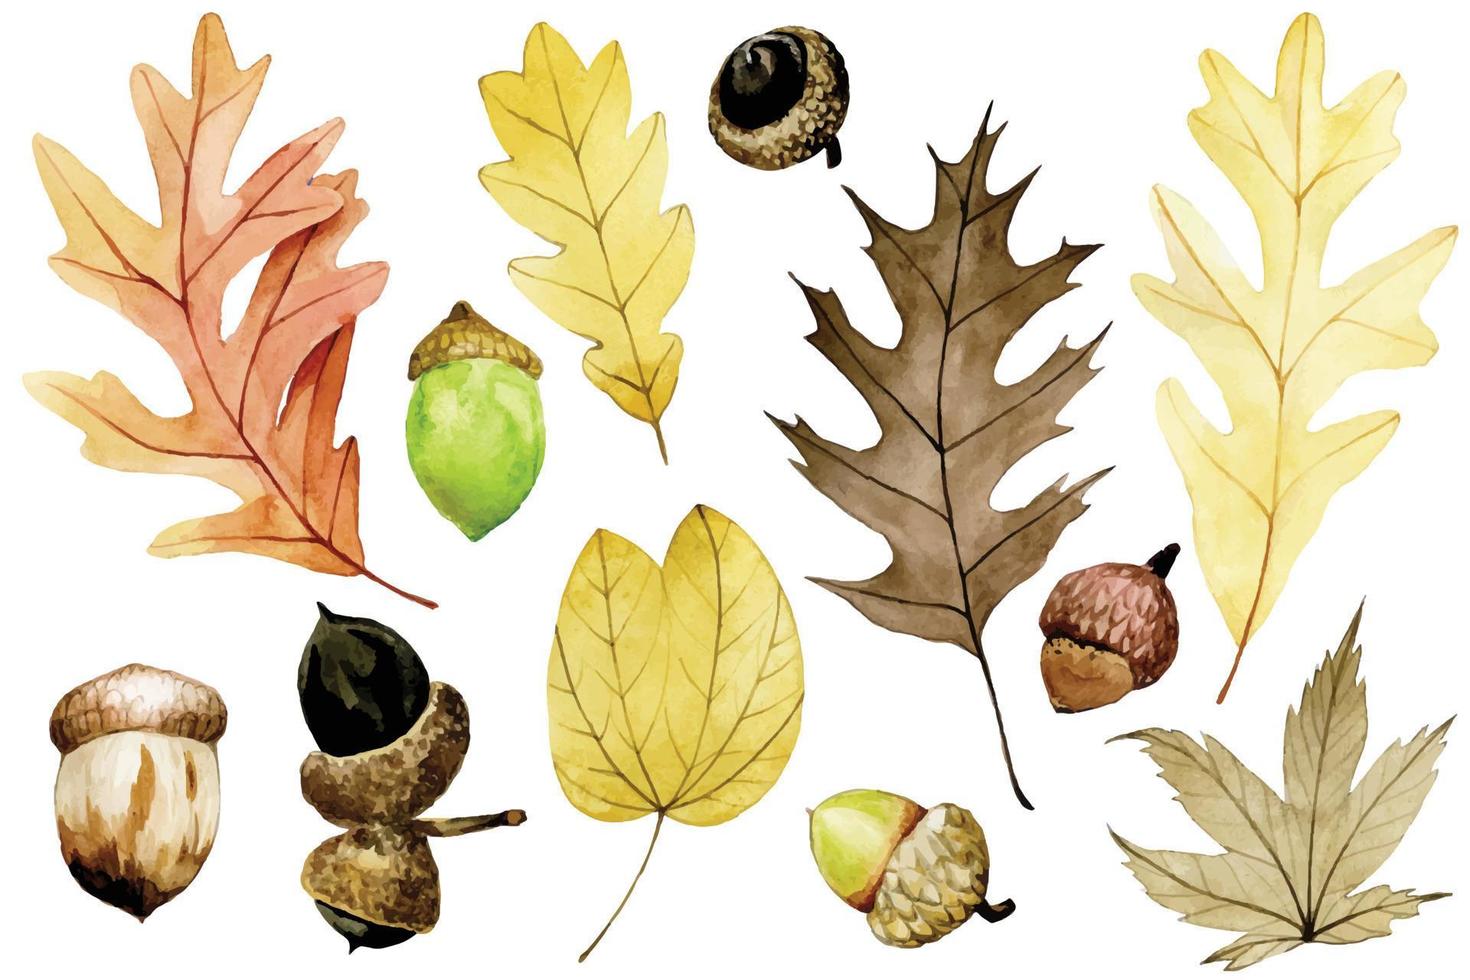 aquarel tekening. bezet met eikels en droge herfsteik, esdoornbladeren. herfst set met gele, rode bladeren, gekleurde eikels geïsoleerd op een witte achtergrond. vector